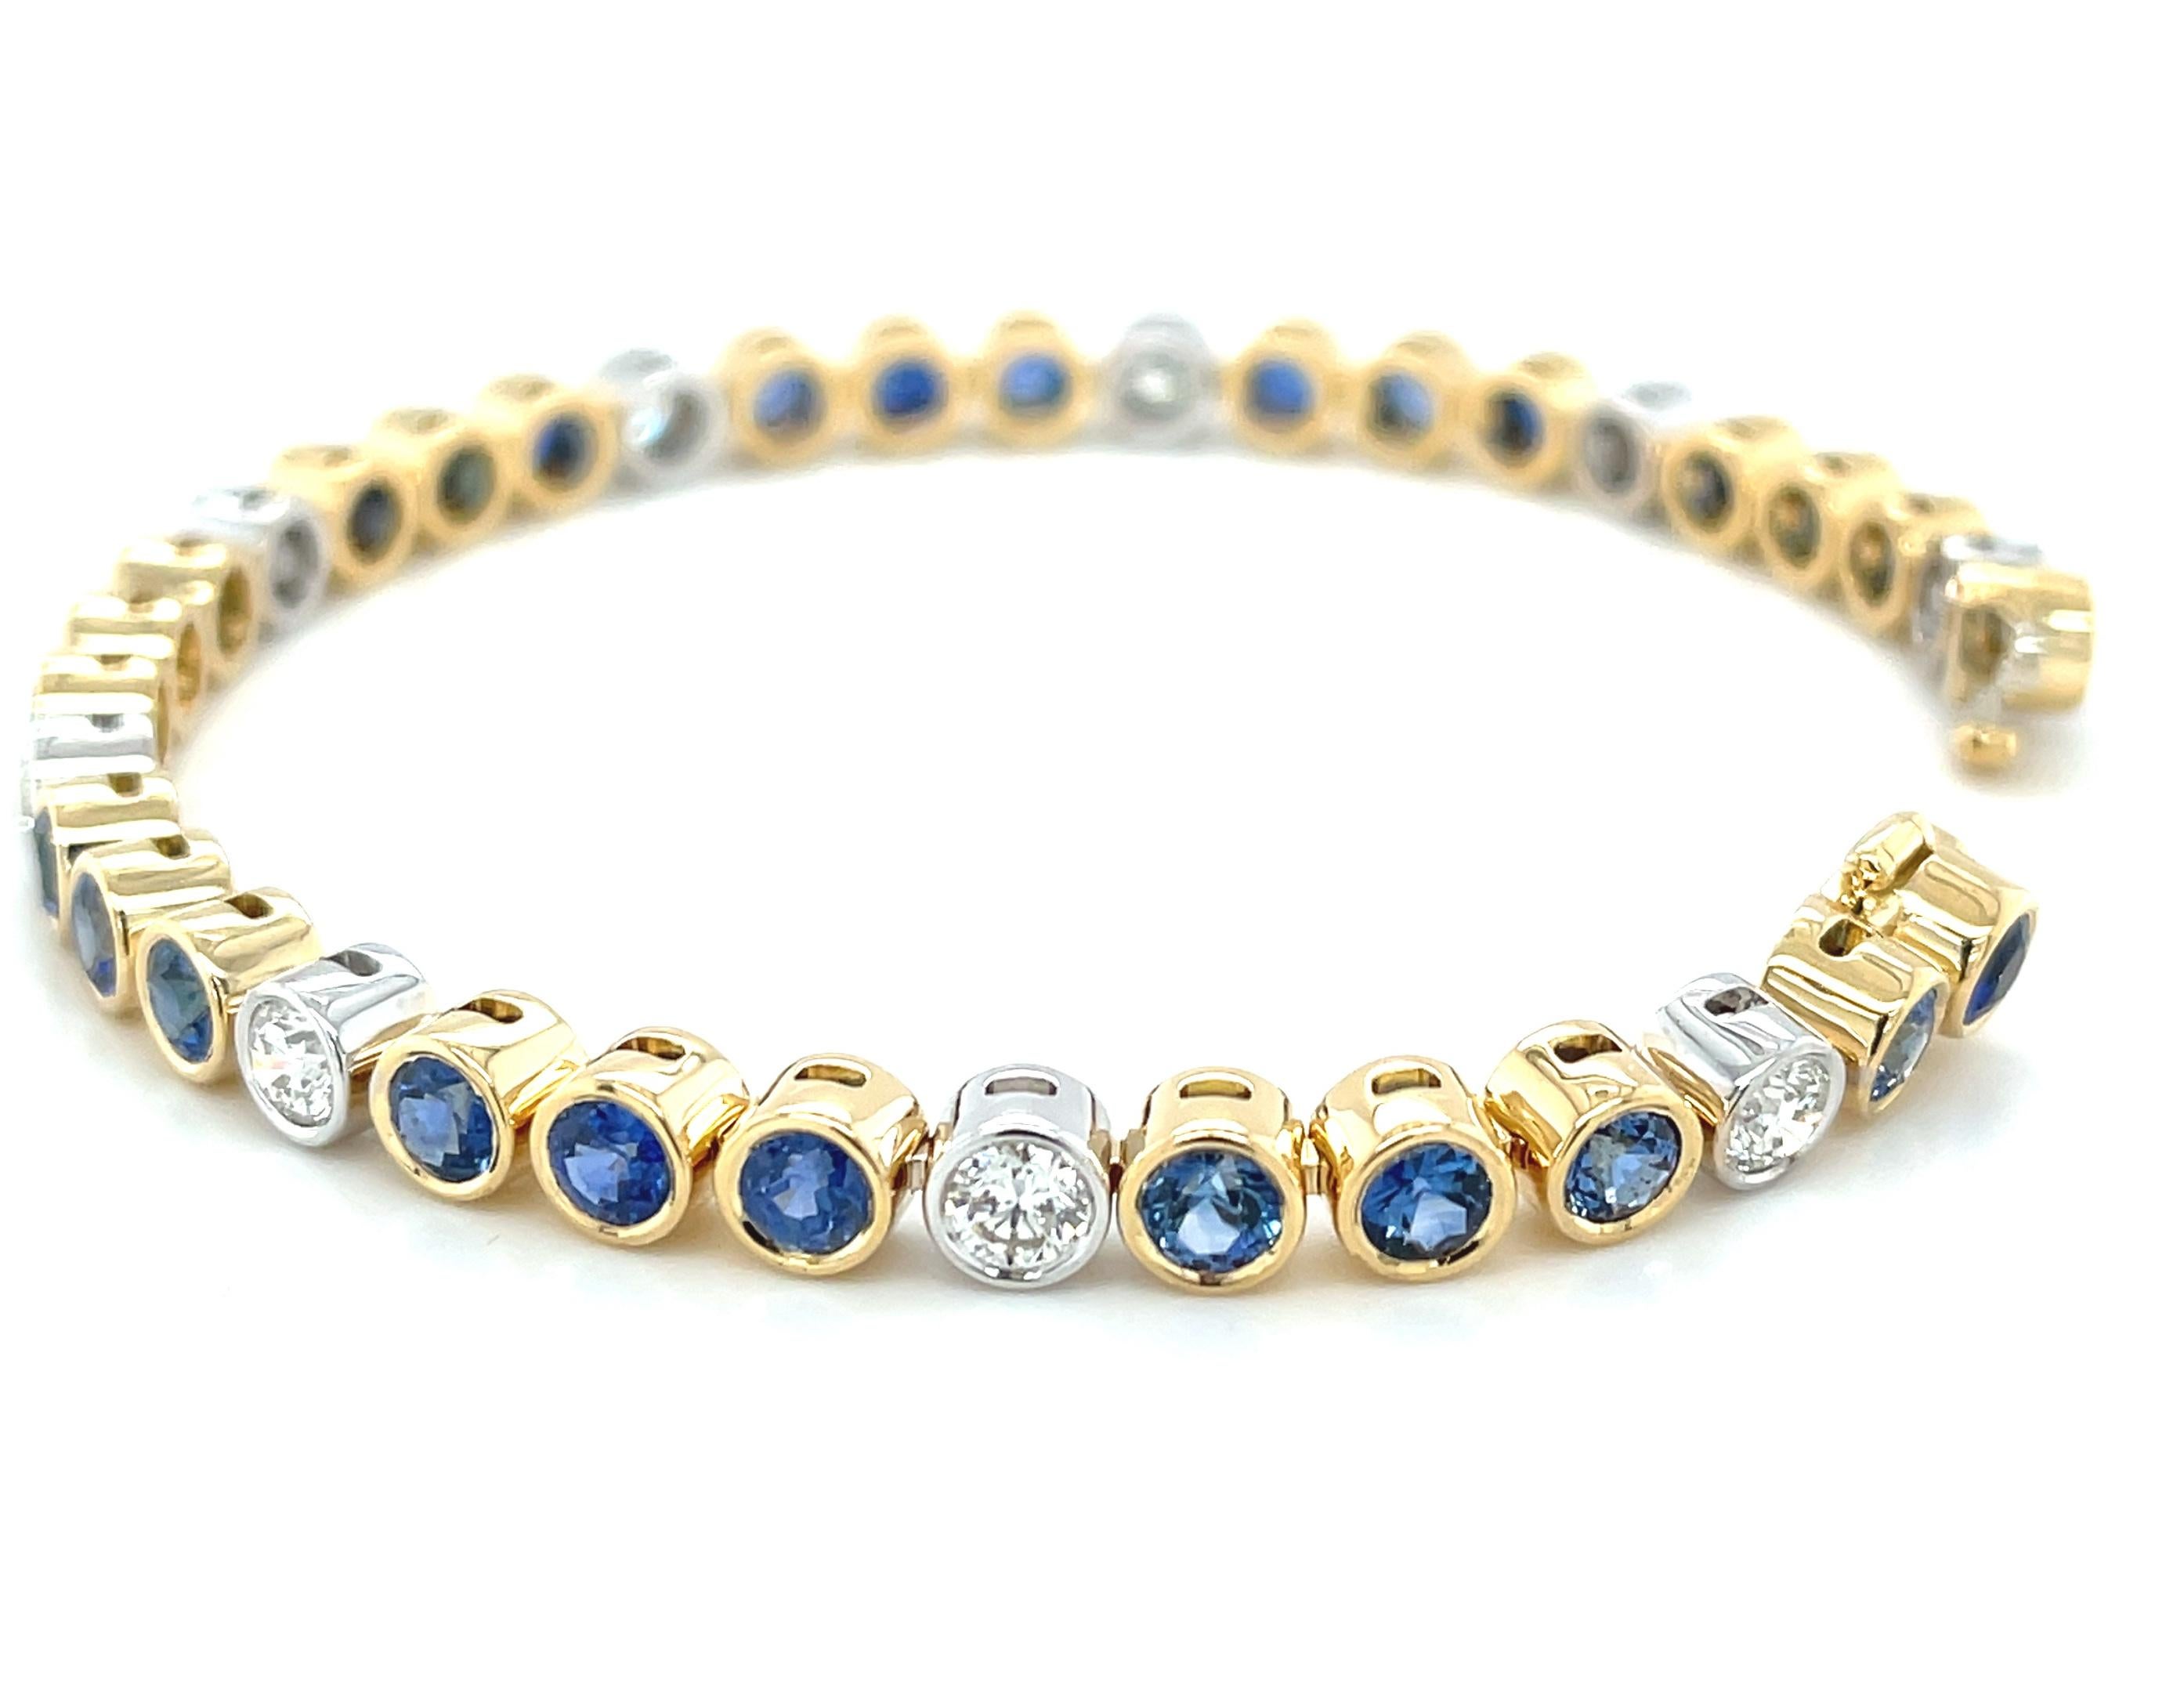 Dieses luxuriöse Tennisarmband aus blauem Saphir und Diamanten besteht aus über 7 Karat erstklassigen blauen Ceylon-Saphiren, die mit über 2 Karat funkelnden Diamanten akzentuiert sind! Die blauen Saphire haben eine wunderbar gleichmäßige, satte